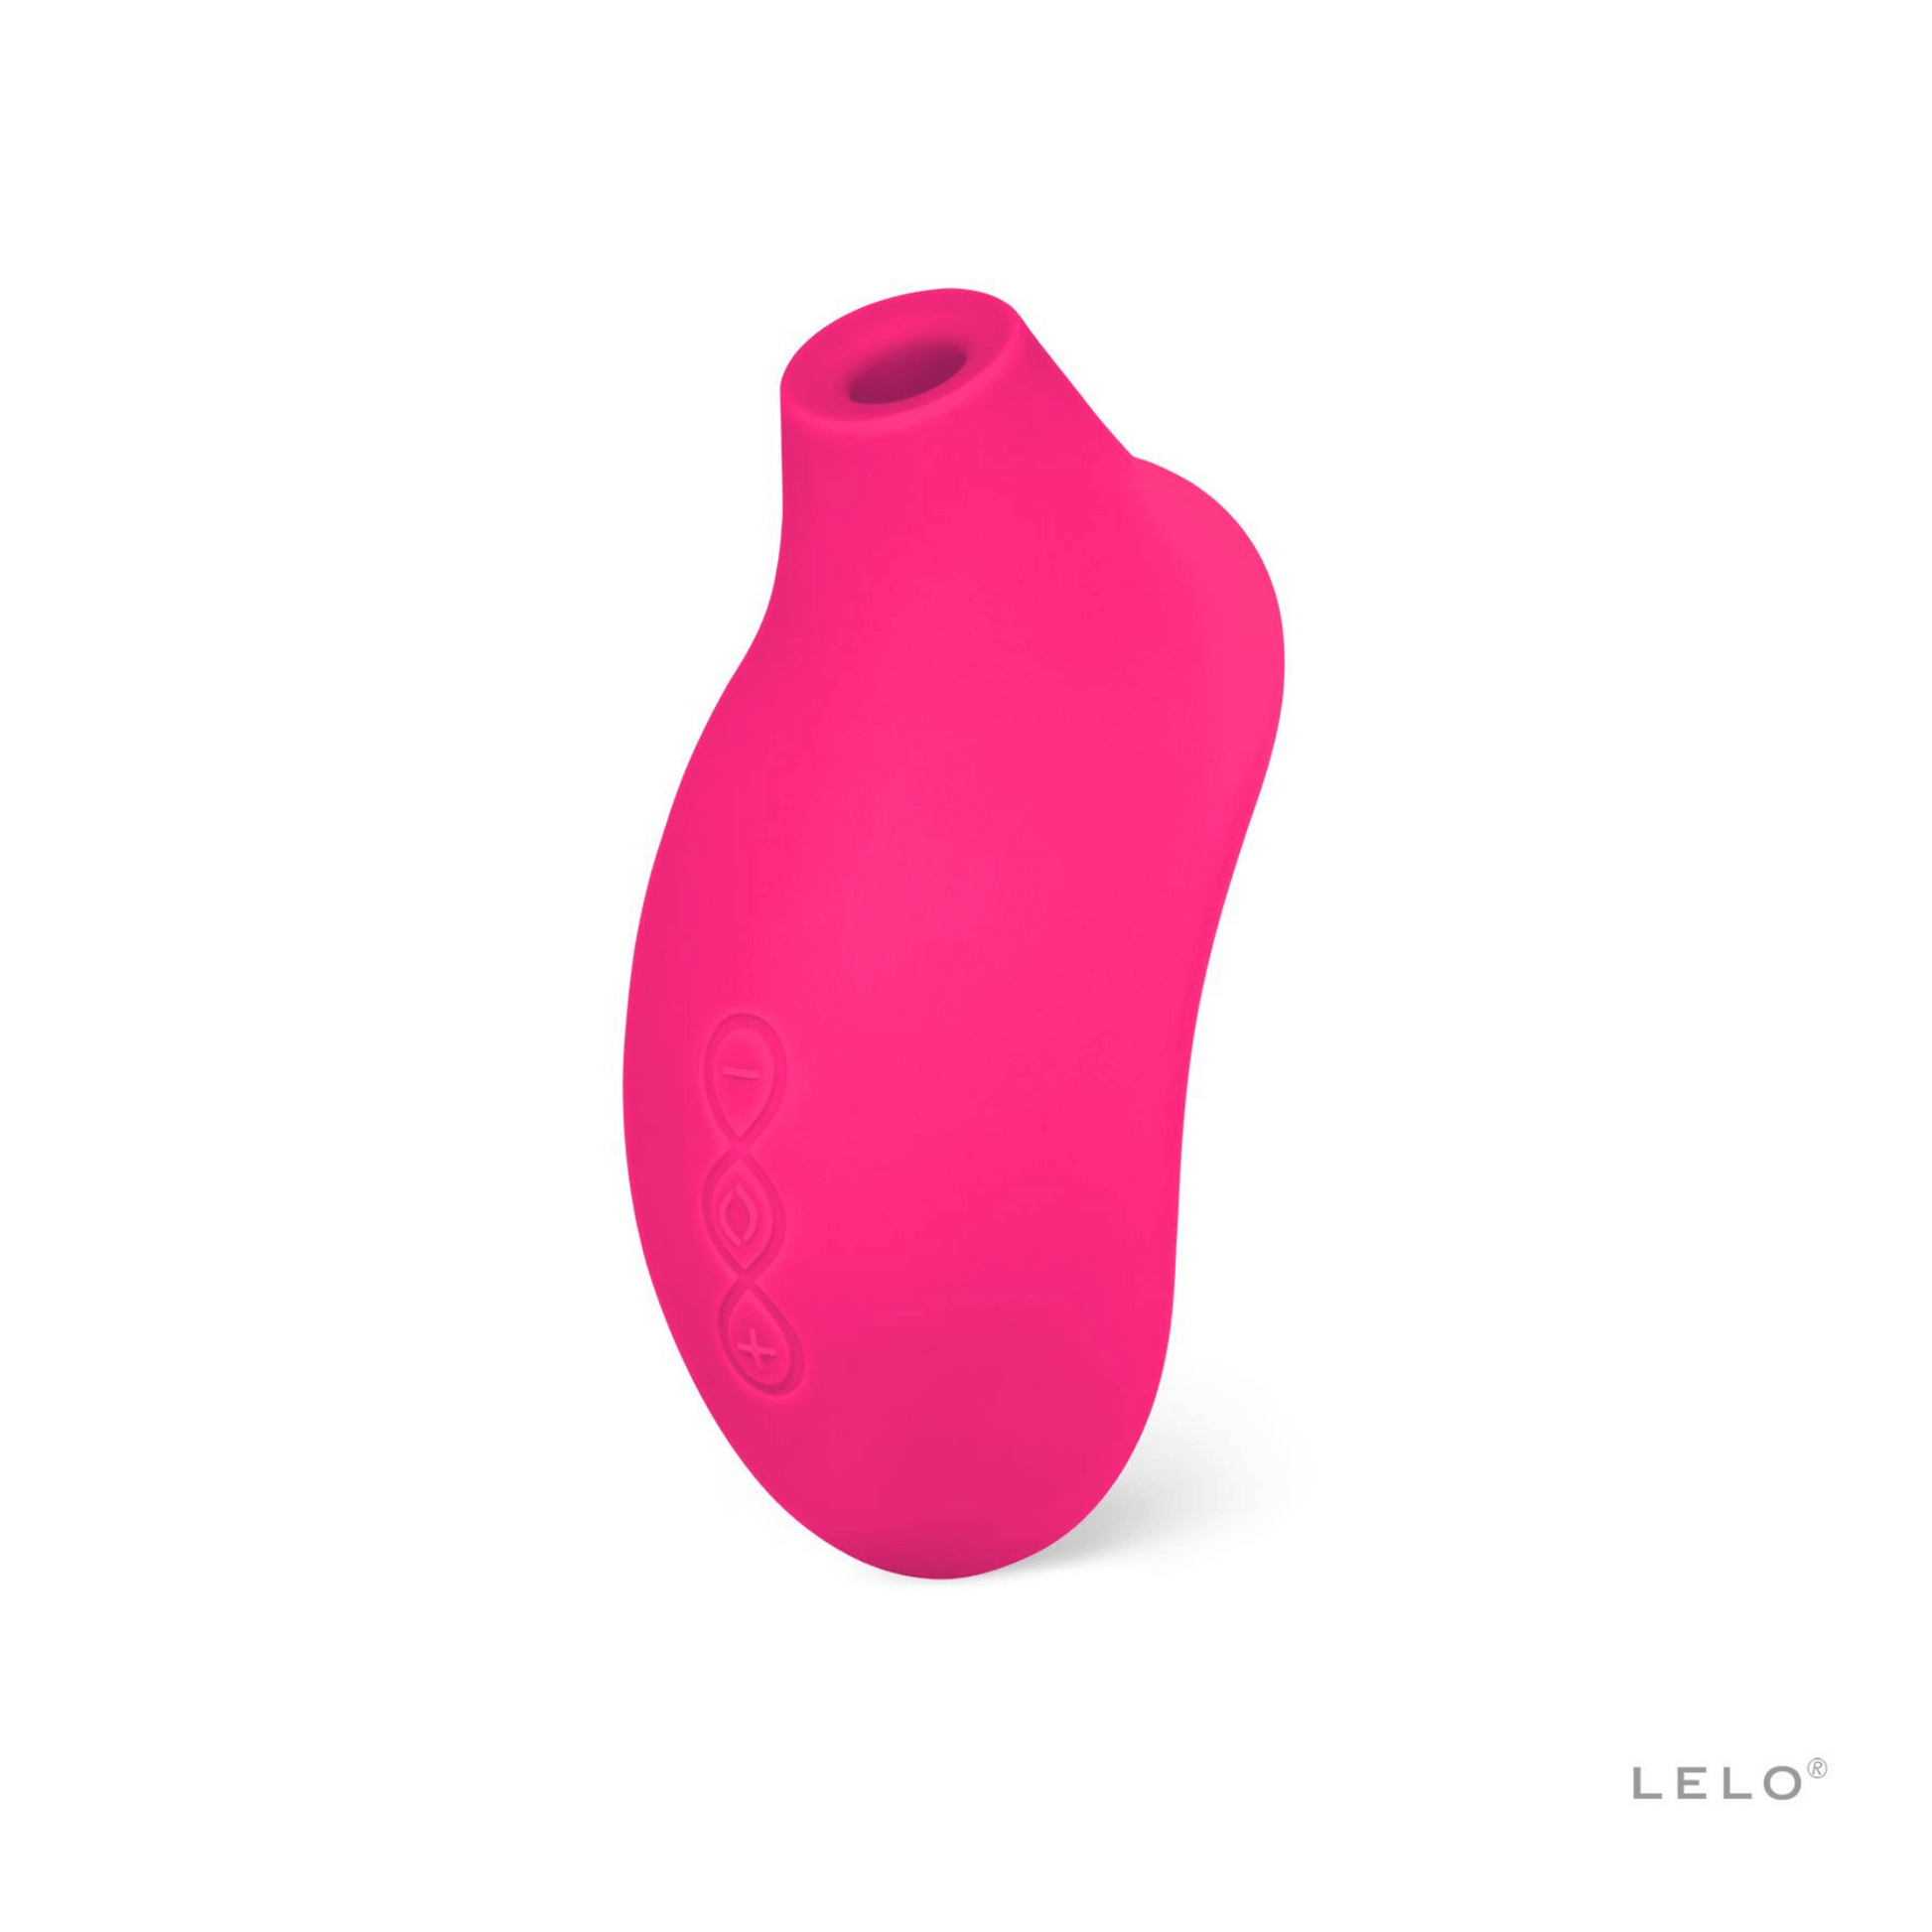 Stimulateur vibrant Sona 2 de Lelo en rose vif, jouet intime sonique pour le plaisir féminin, offert par OhMyGodz.fr, votre boutique de luxe.